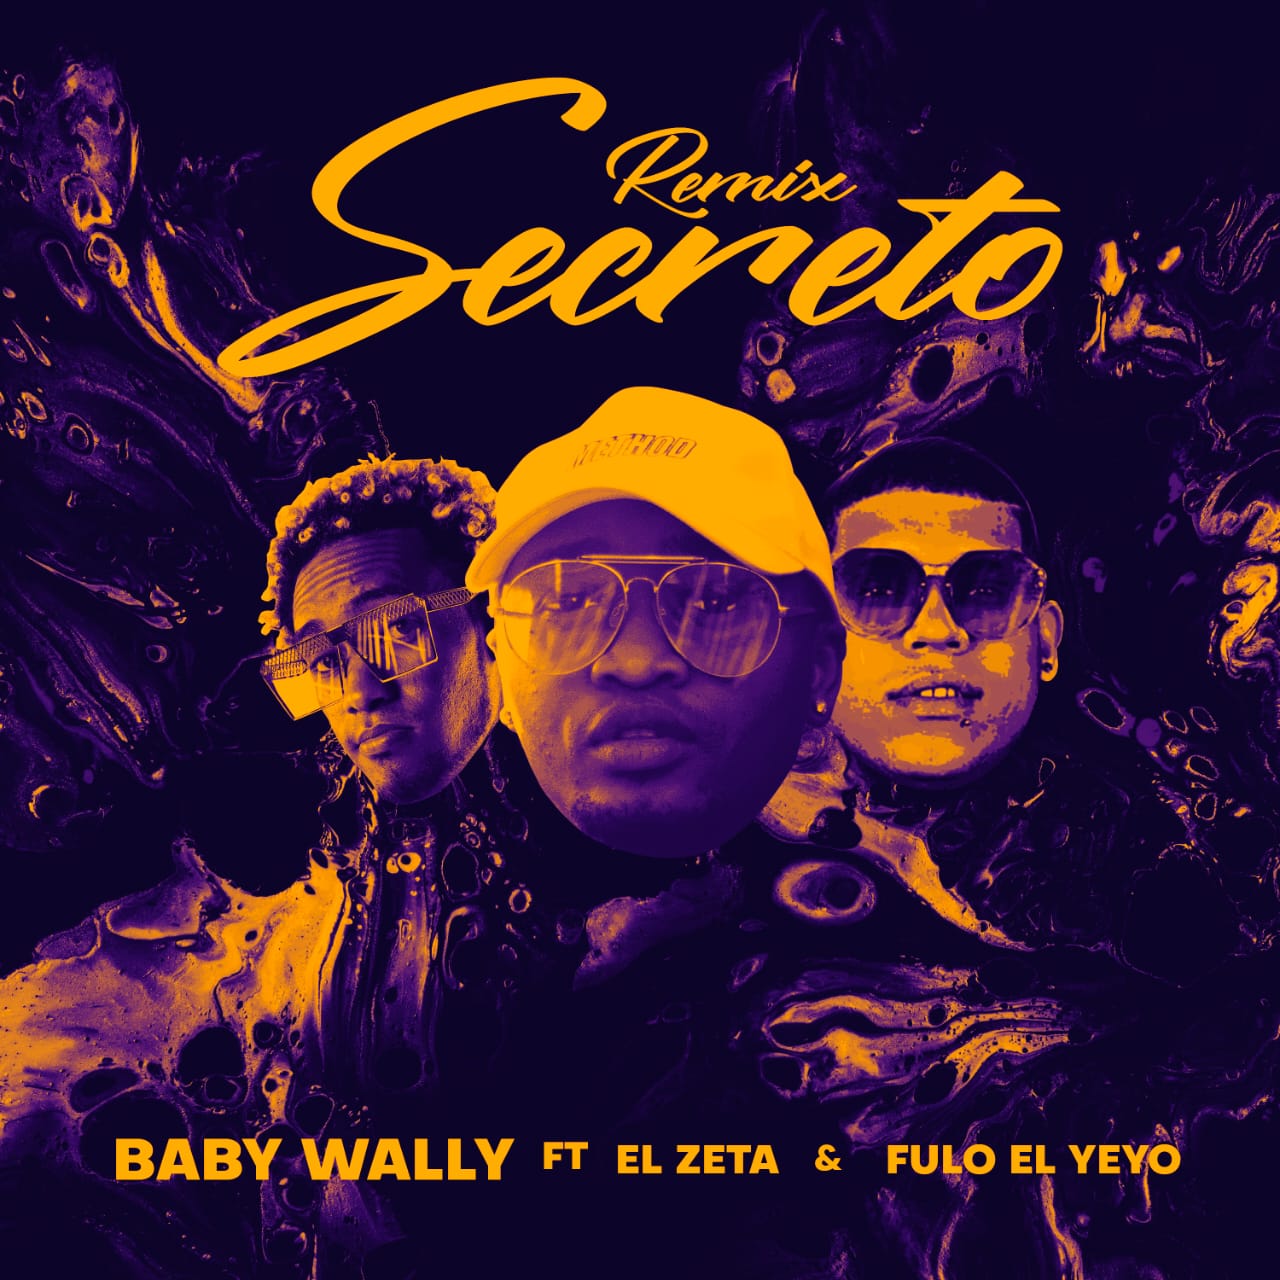 Baby Wally Ft. El Zeta & Fulo El Yeyo - Secreto (Remix).mp3